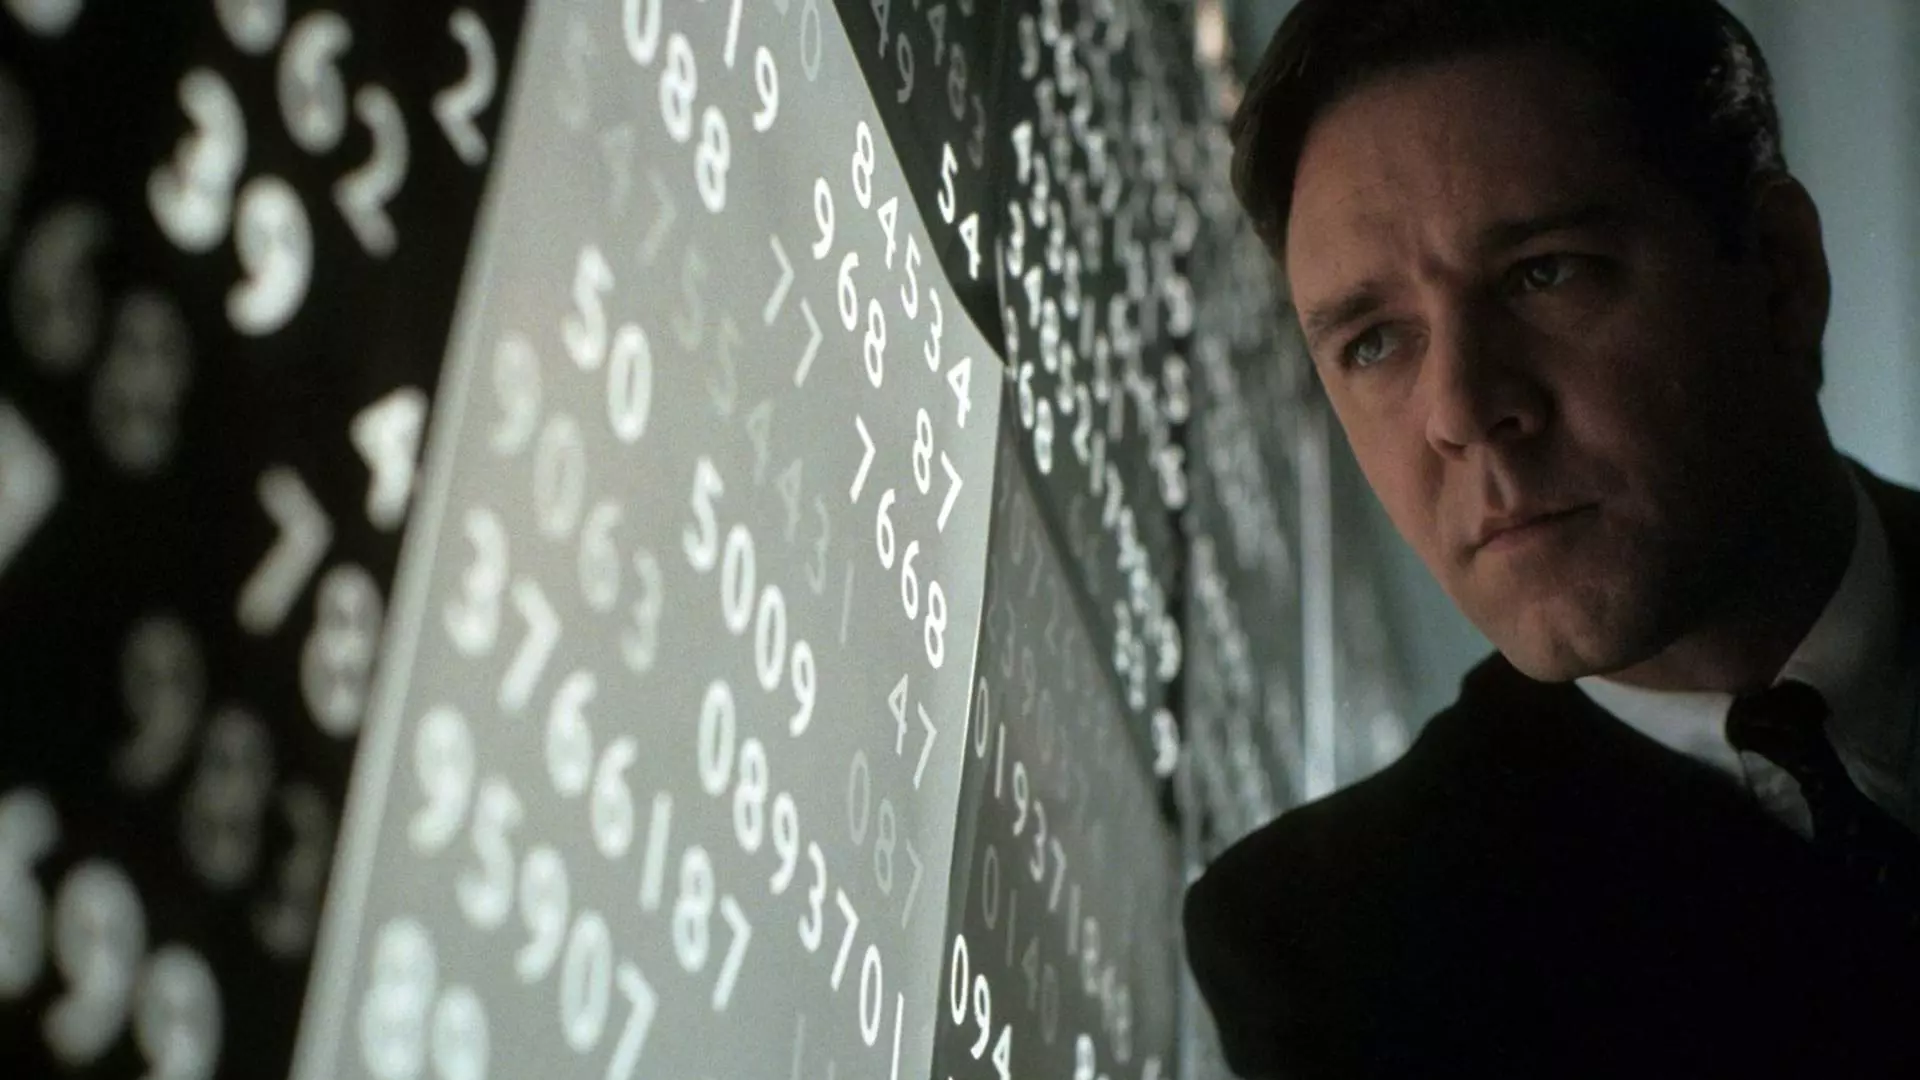 جان در حال نگاه کردن به اعداد در فیلم یک ذهن زیبا